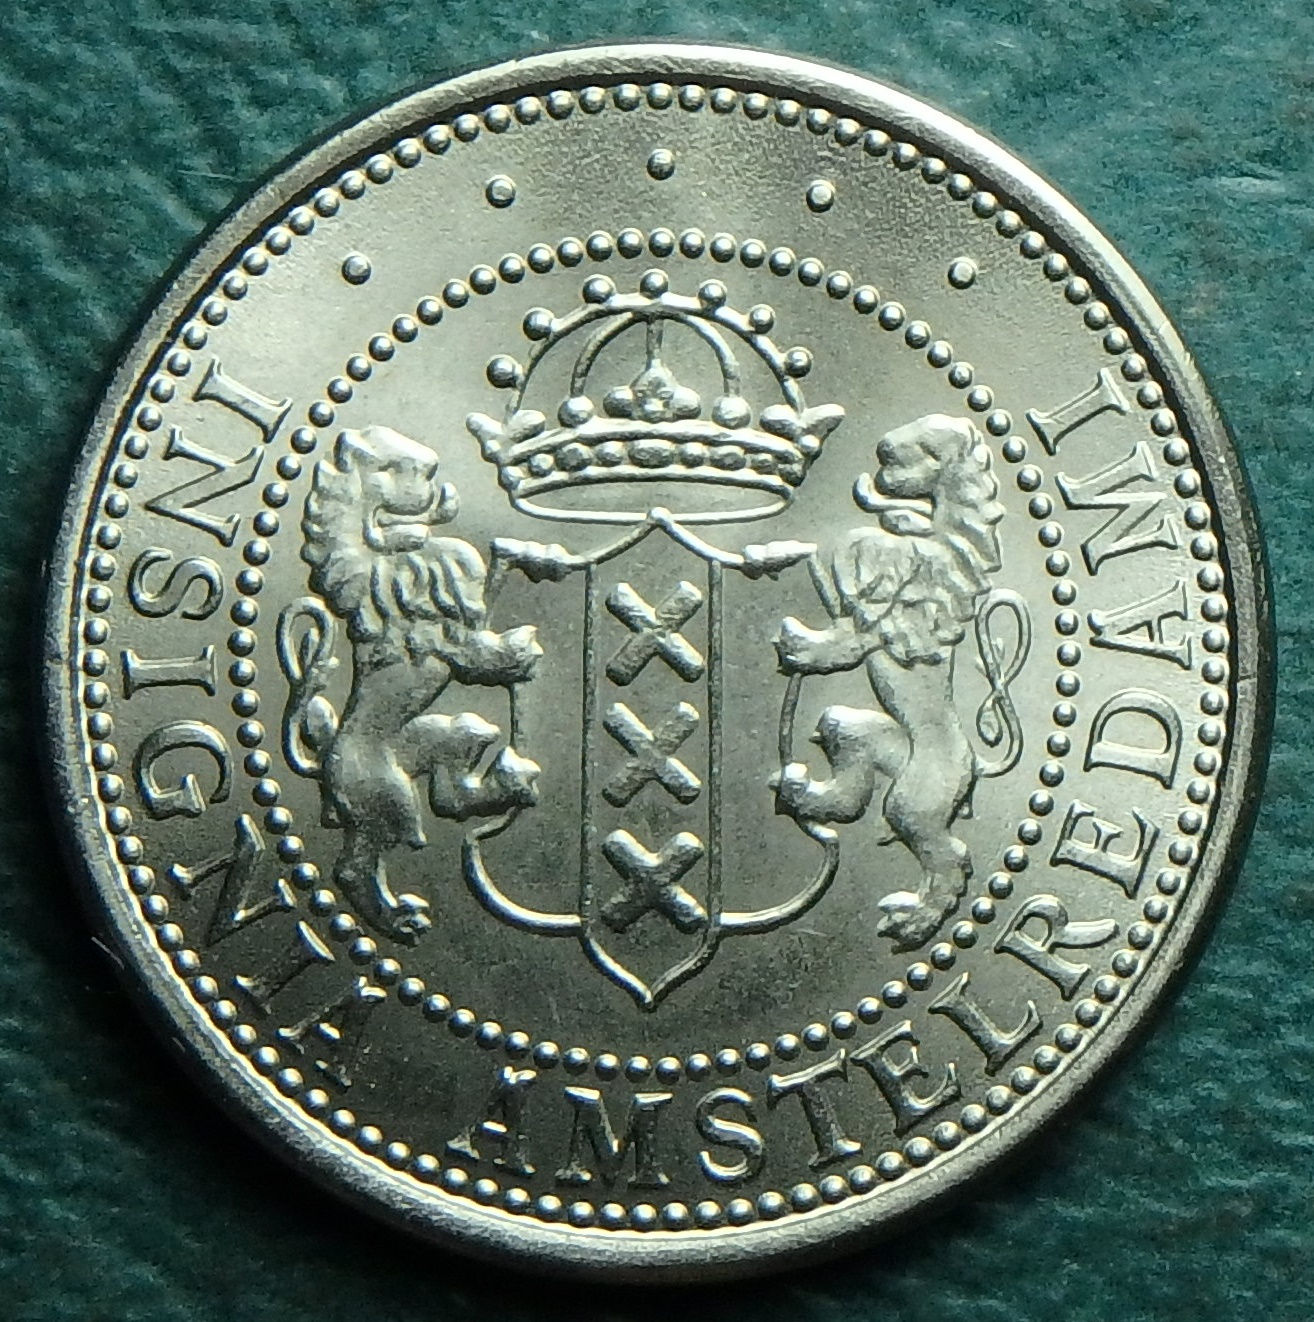 1975 NL 1 f obv token.JPG